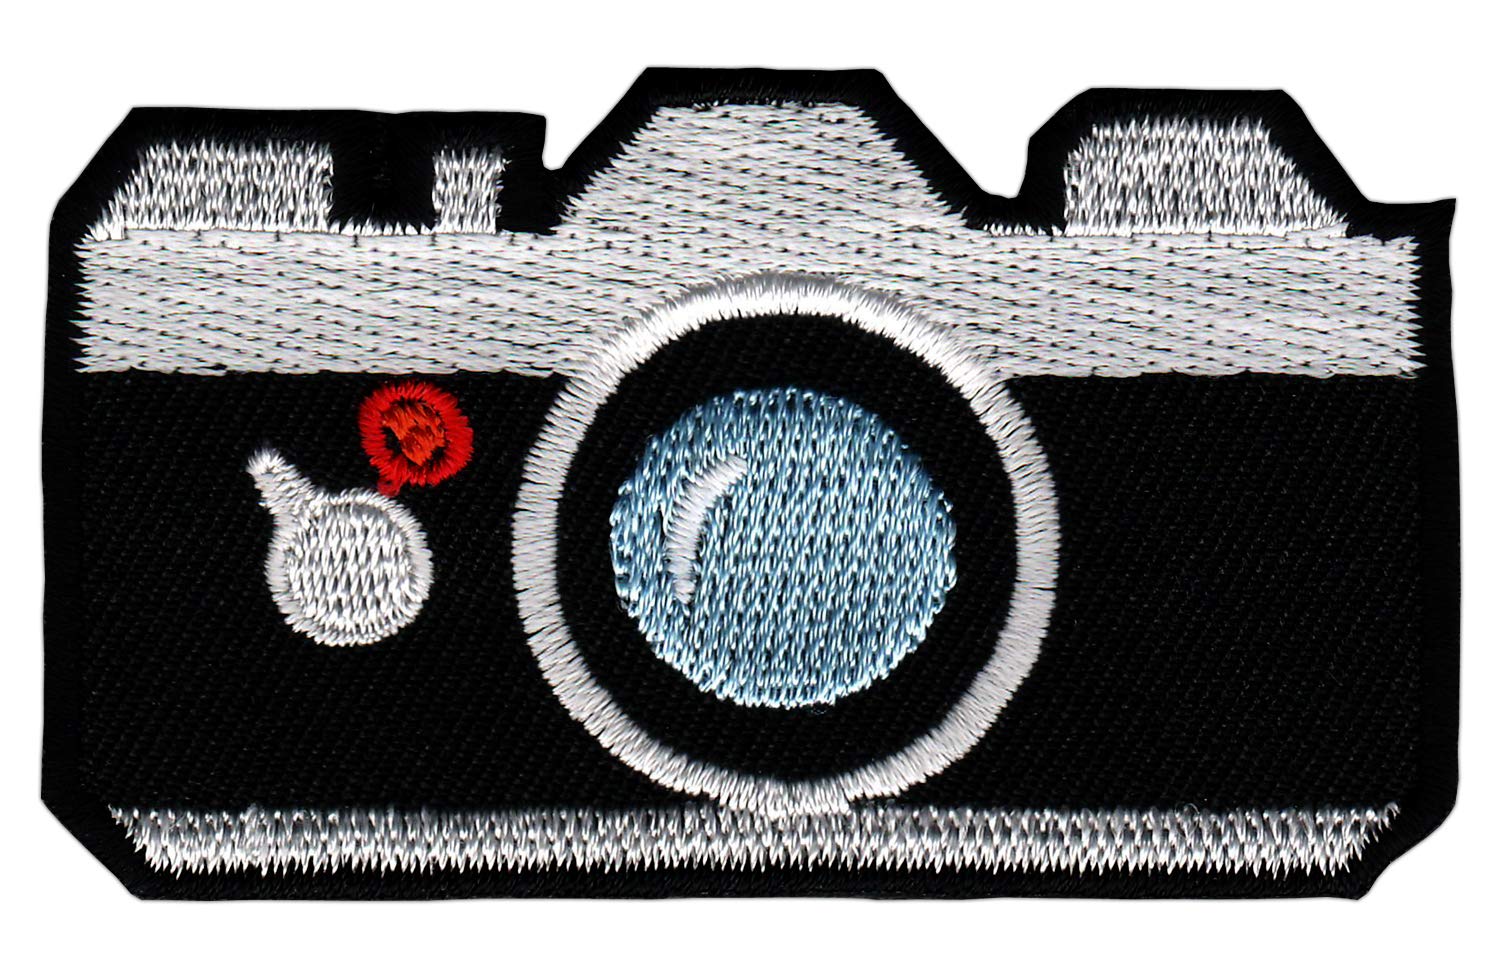 gestickte Kamera Fotoapperat Aufnäher Bügelbild Patch Applikation Größe 7,2 x 4,3 cm von Bestellmich